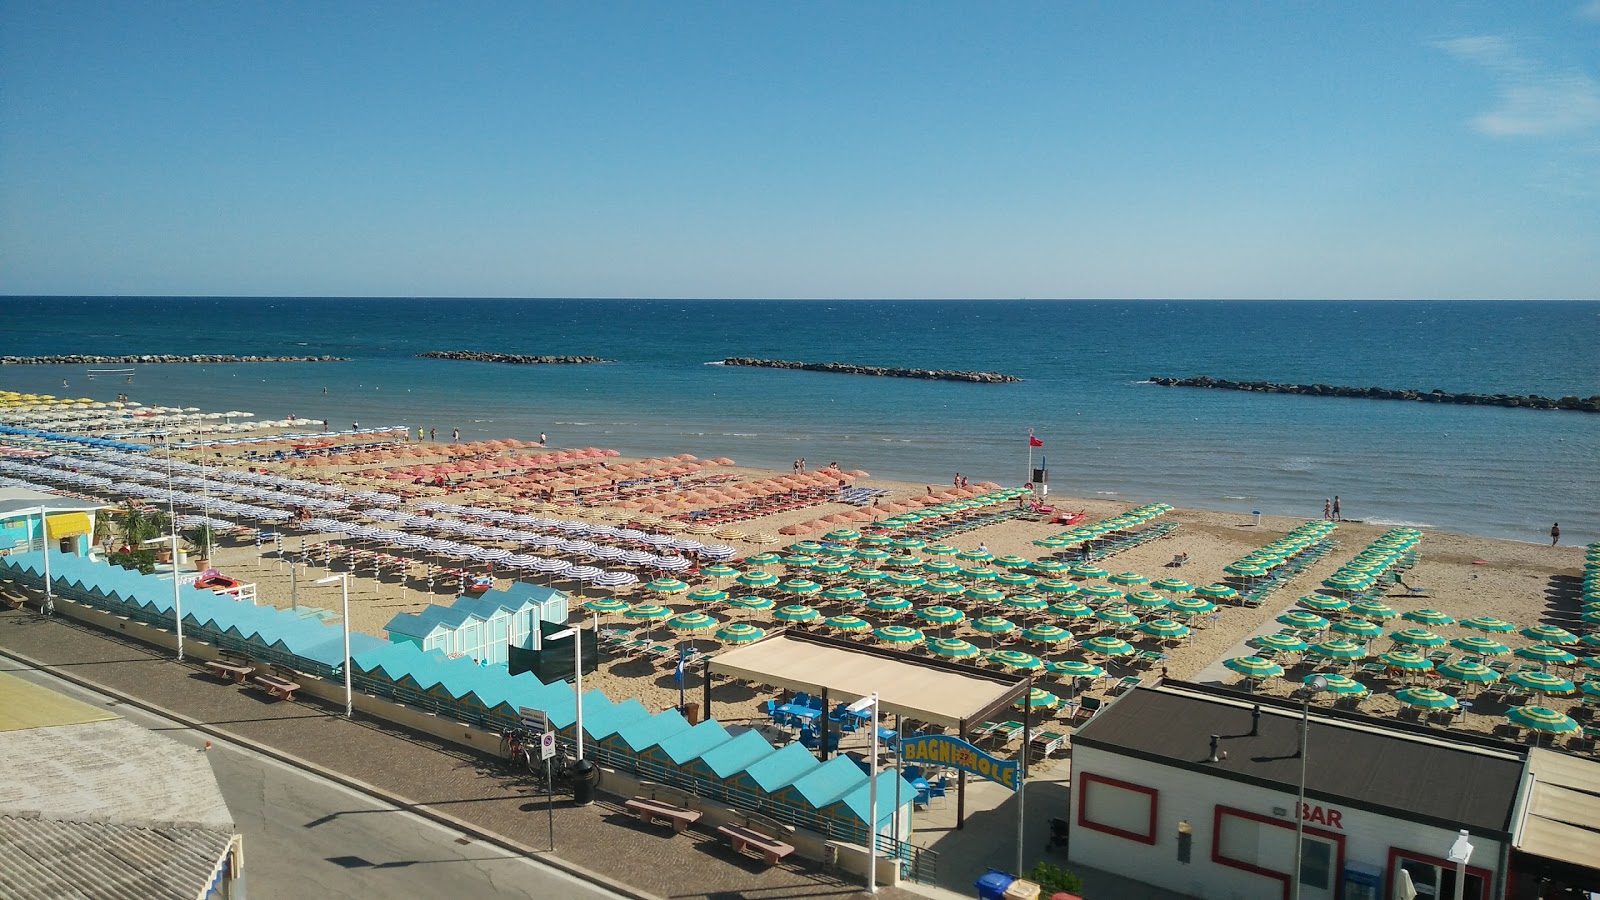 Pesaro beach'in fotoğrafı - Çocuklu aile gezginleri için önerilir